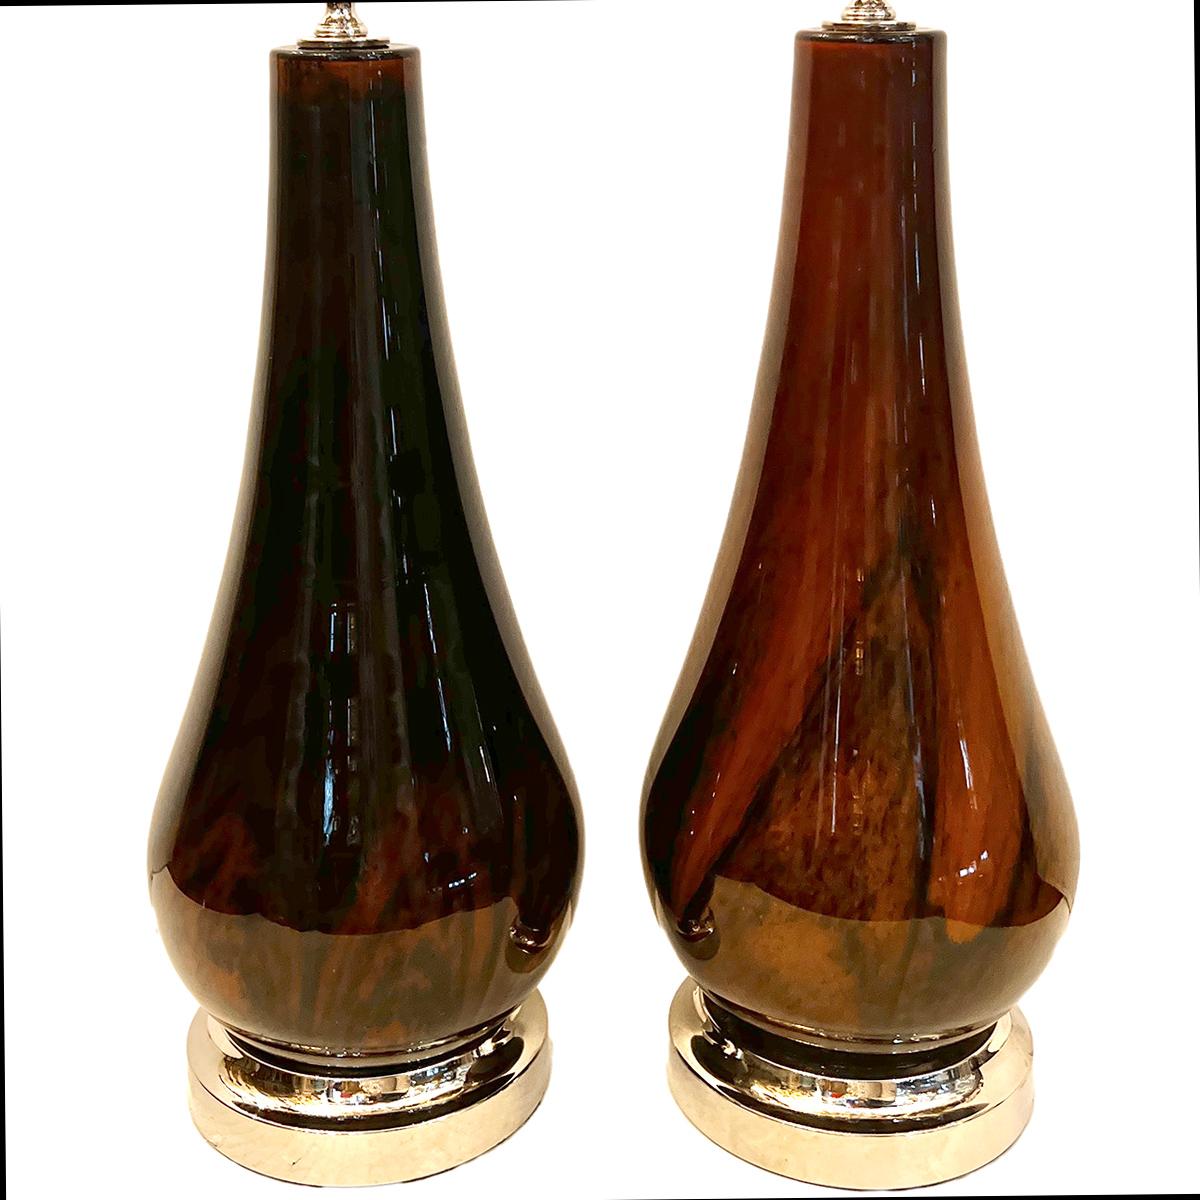 Ein Paar französische Tischlampen aus Kunstglas aus den 1960er Jahren.

Abmessungen:
Höhe des Körpers: 18,5